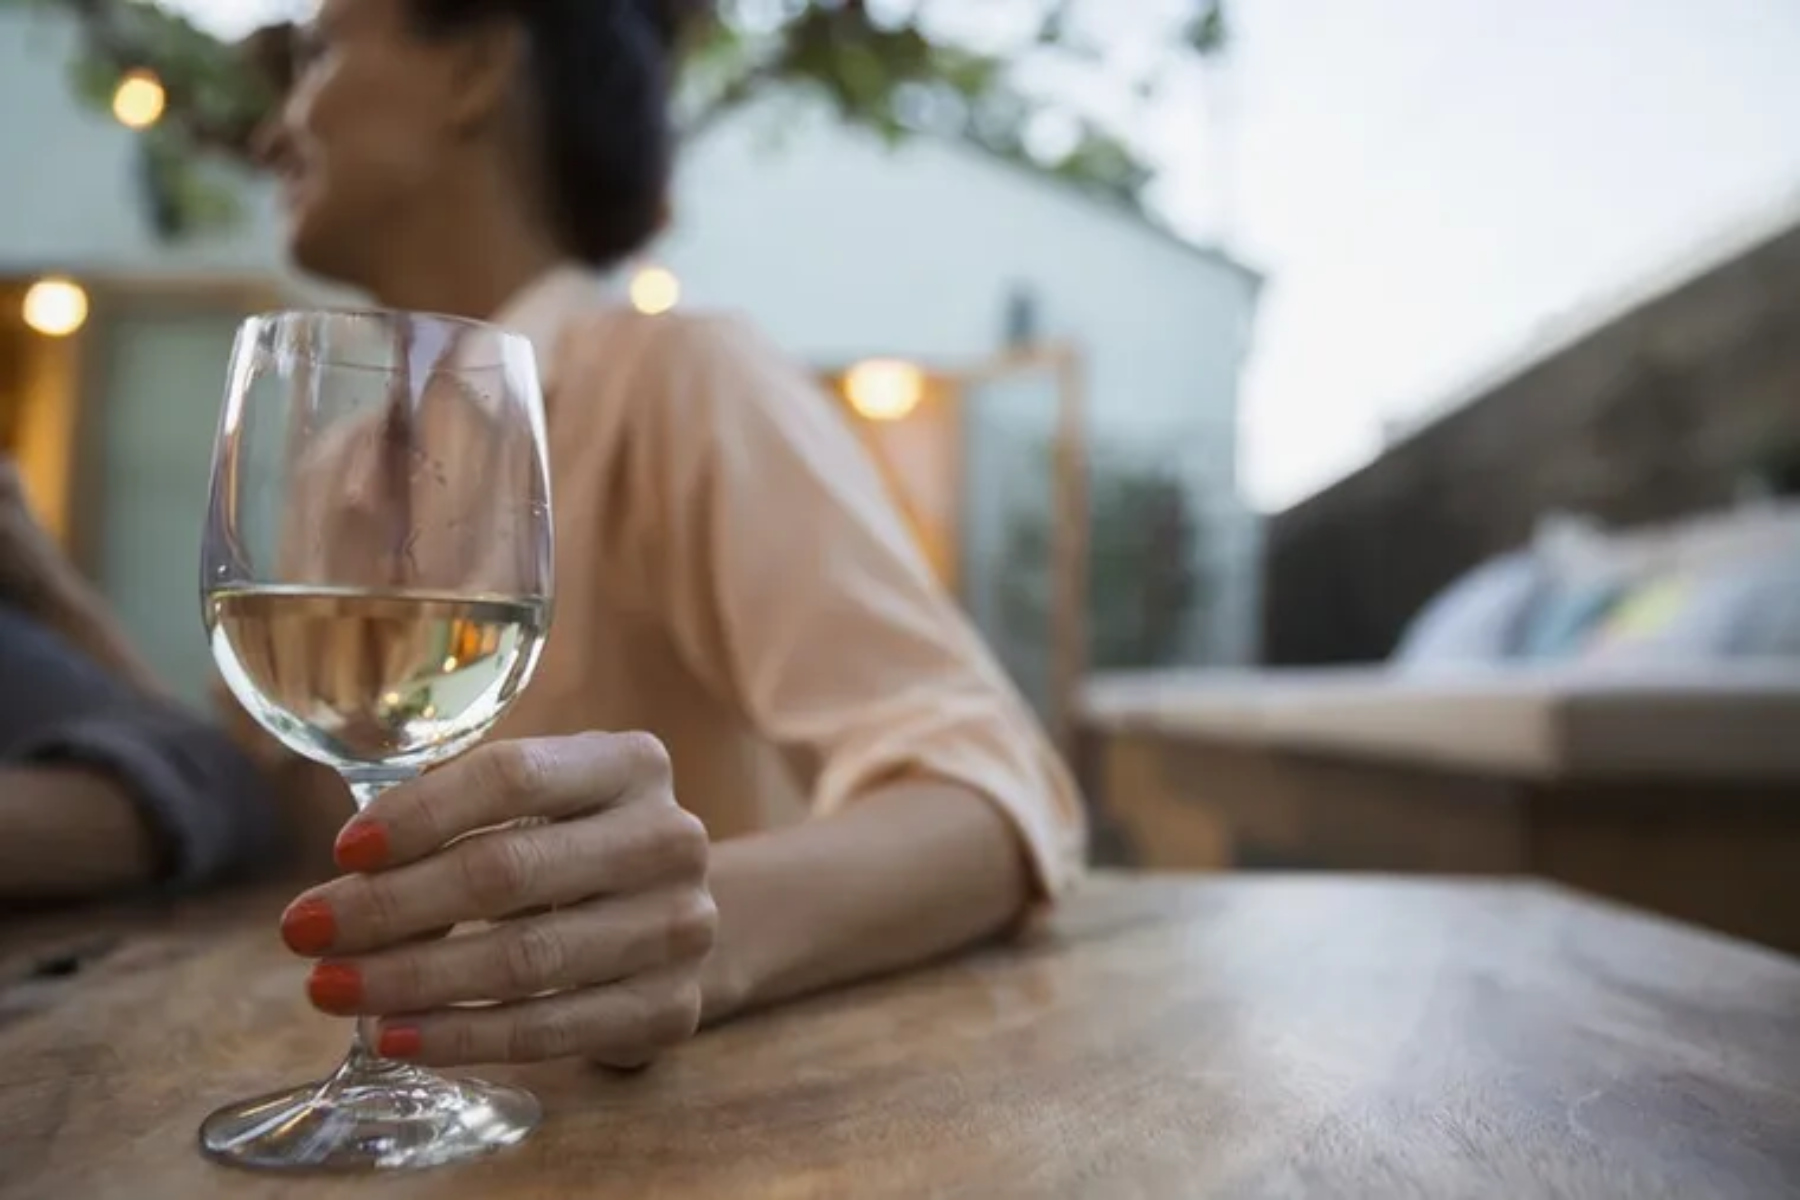 Αλκοόλ: Ποια είναι η εβδομαδιαία ποσότητα αλκοόλ που μπορούμε να καταναλώνουμε;